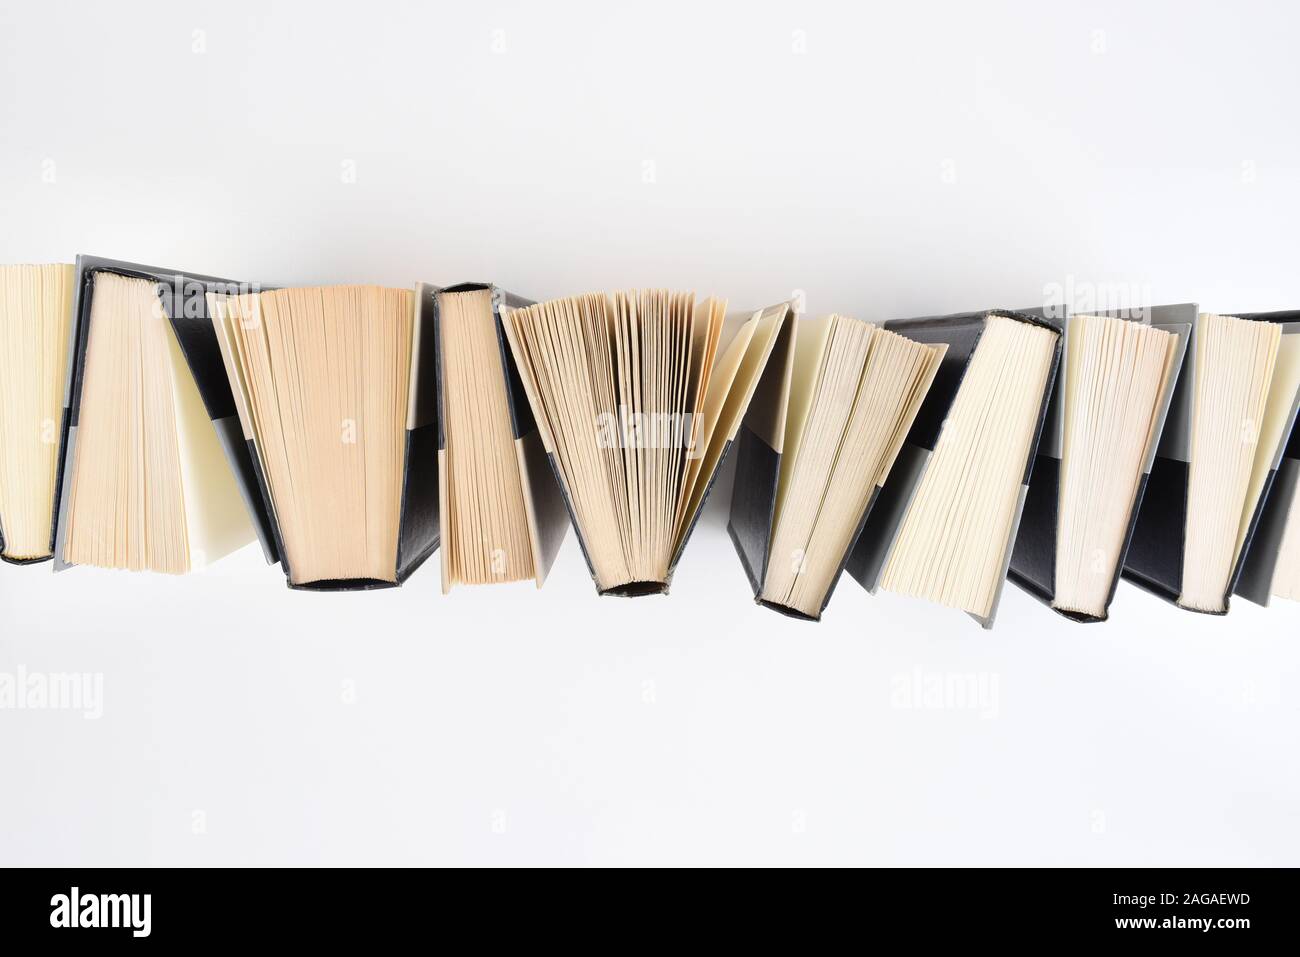 Hohen winkel Bild aus einer Reihe von Bücher stehen auf Ende auf einem weißen Hintergrund. Stockfoto